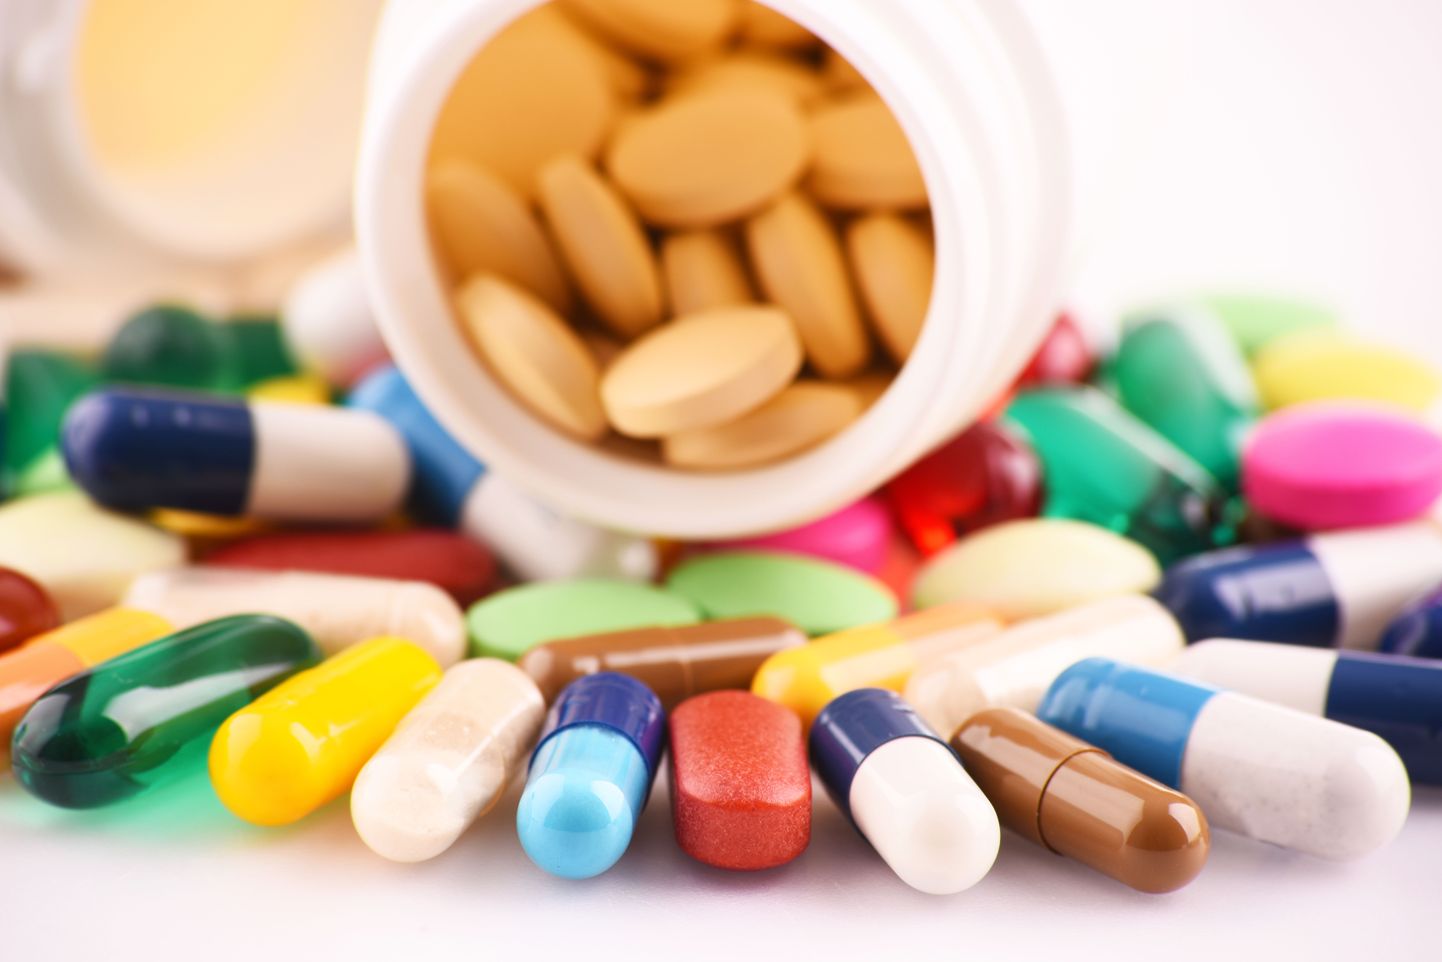 Ravimeid tasub võtta arsti või apteekri ettekirjutuse järgi.